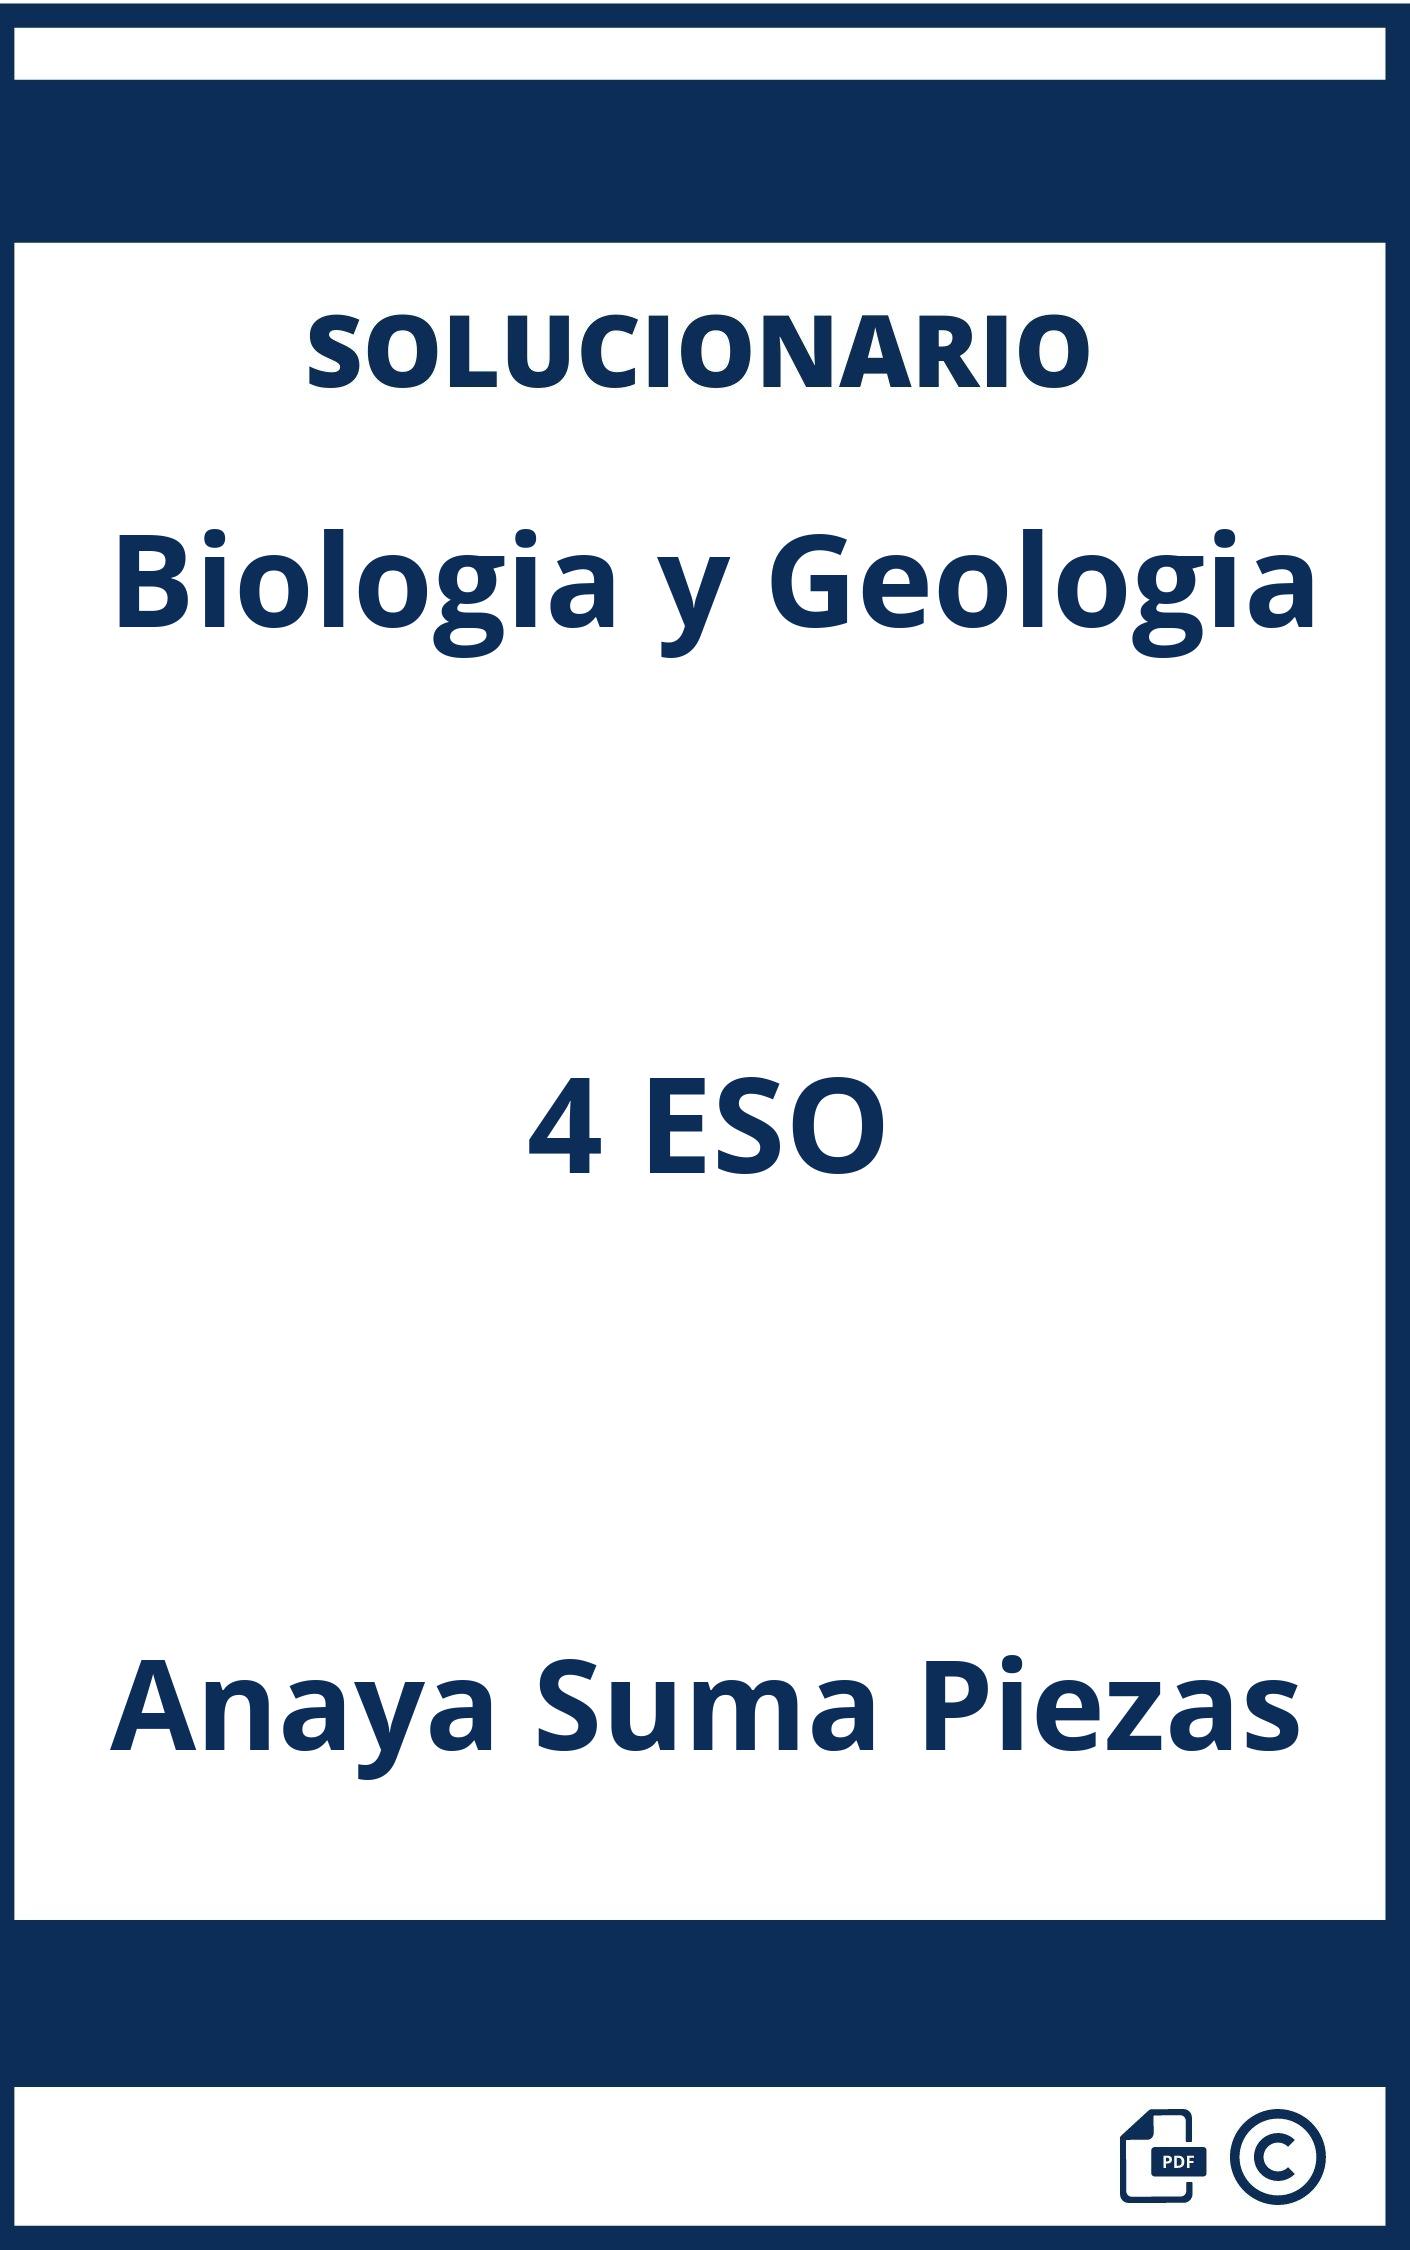 Solucionario Biologia y Geologia 4 ESO Anaya Suma Piezas